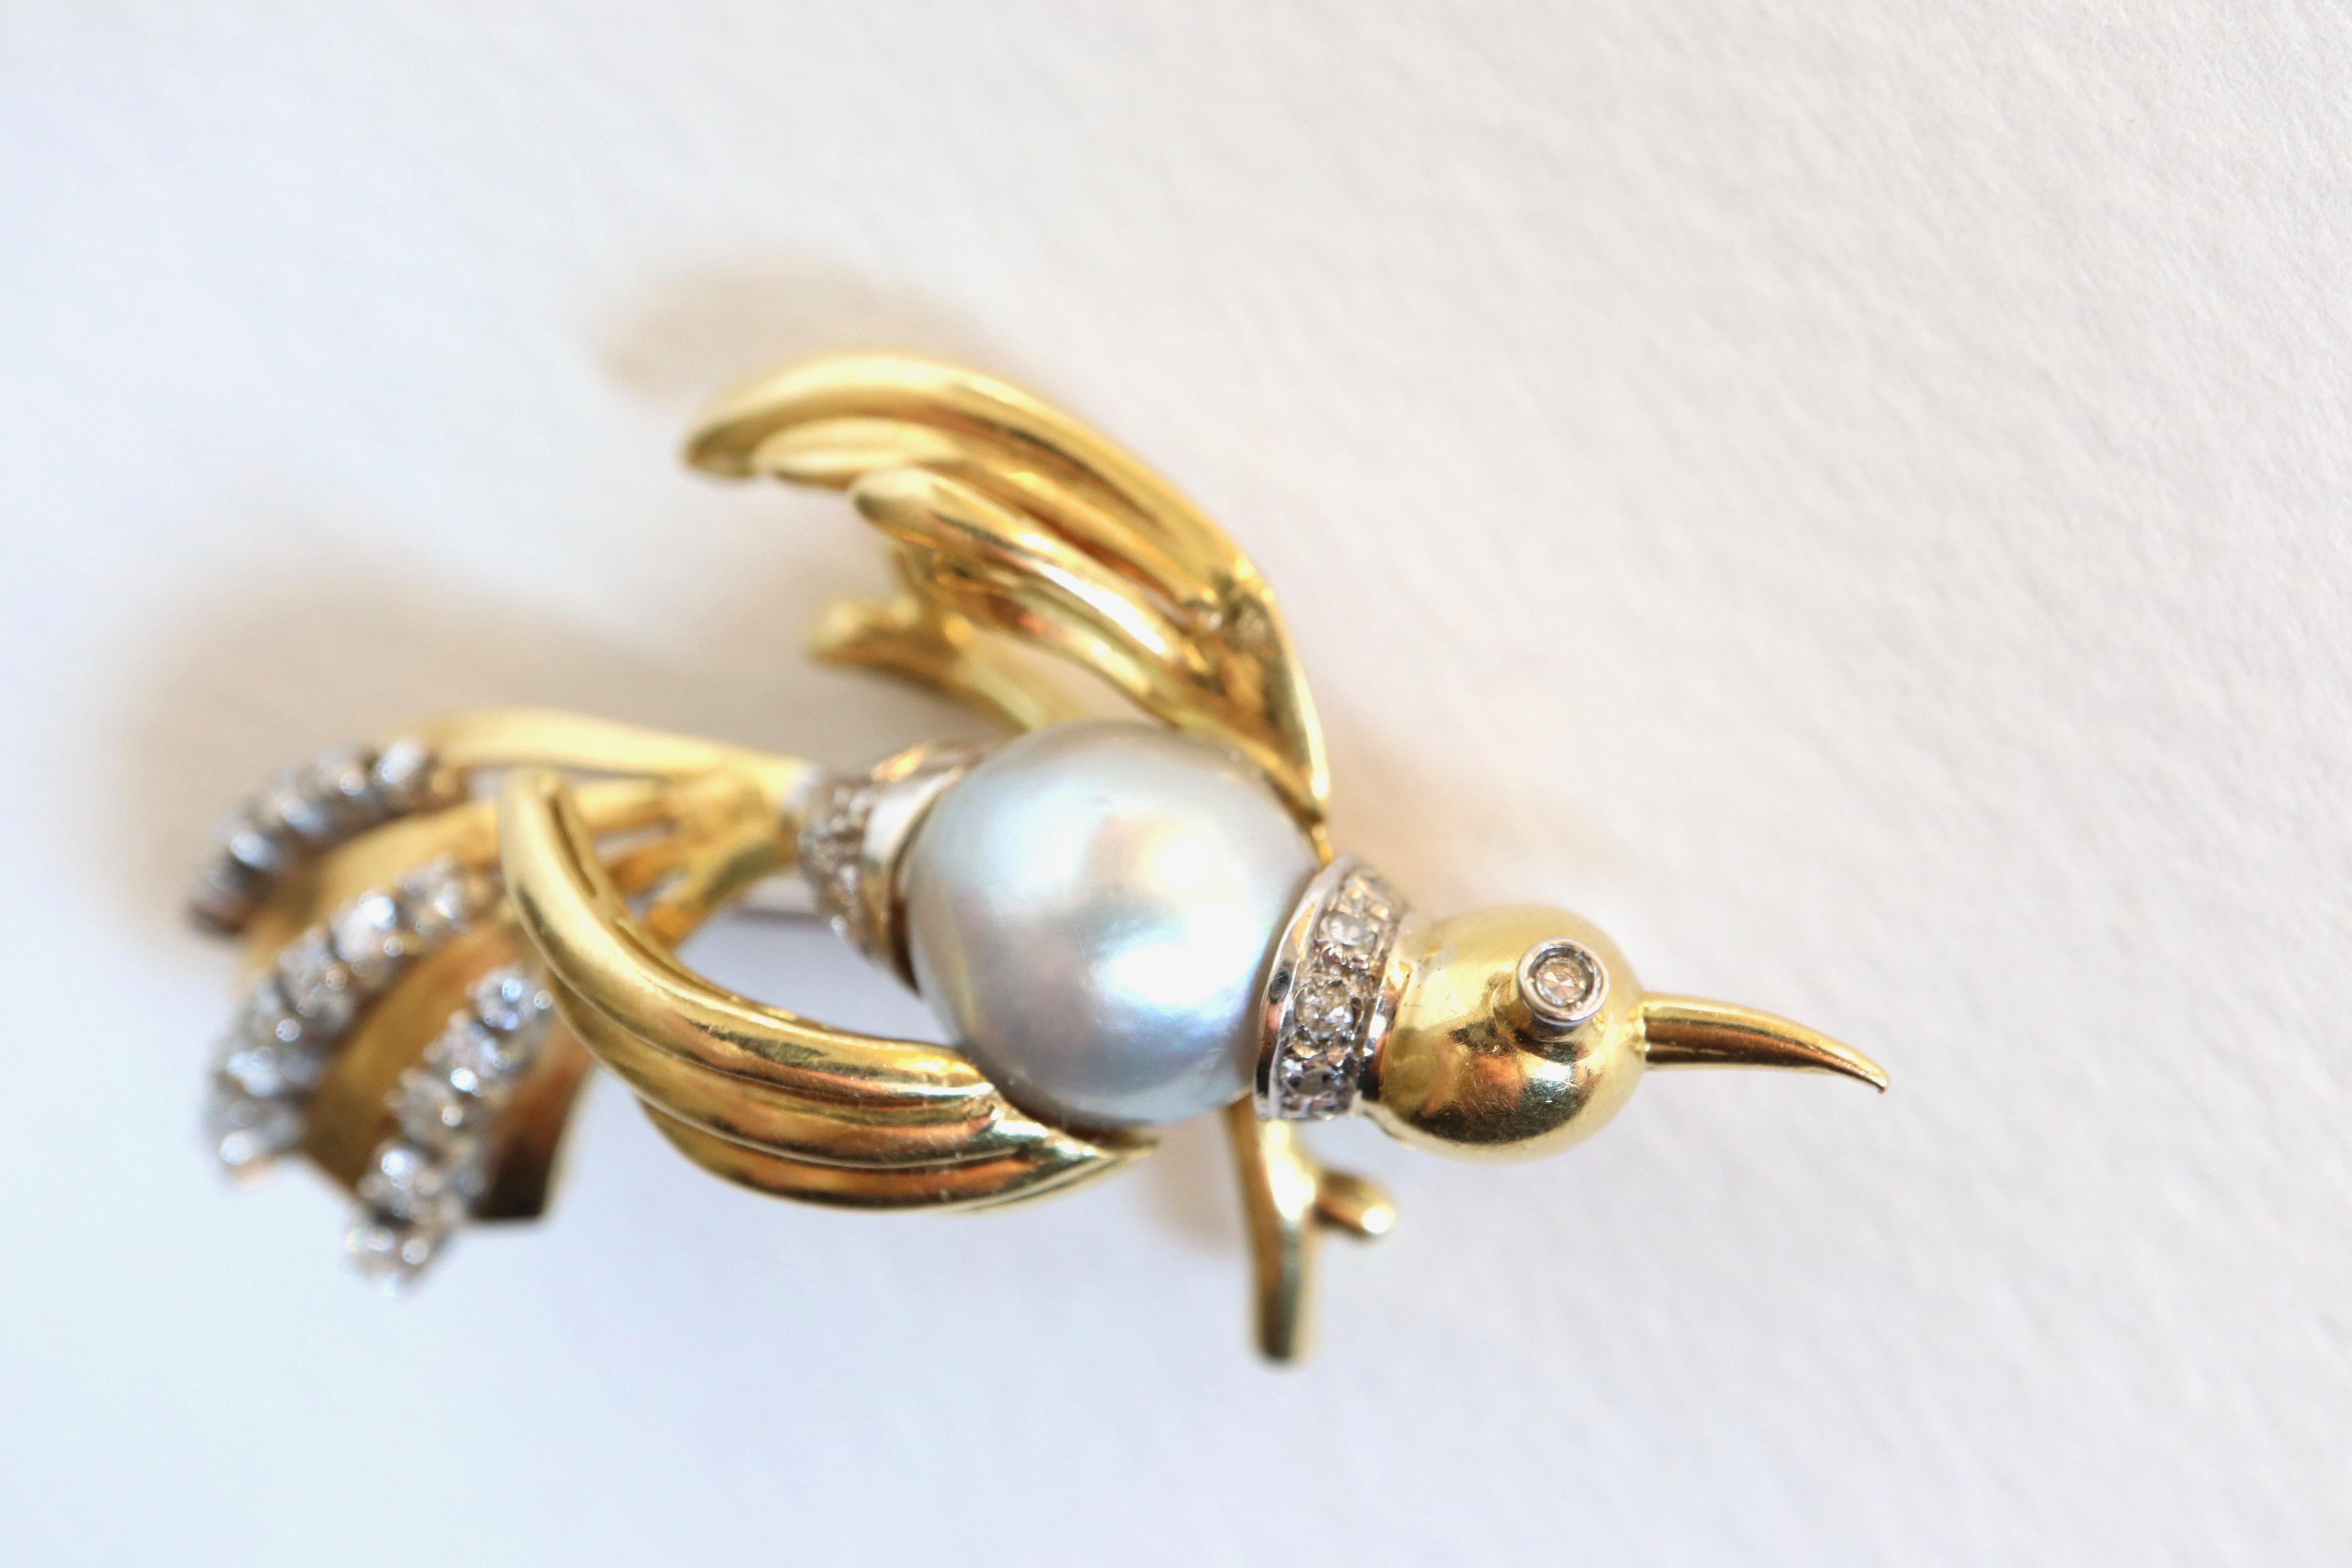 Antike Vogelbrosche um 1960 aus 18 Kt. Gelbgold und 18 Karat Weißgold, in der Mitte mit einer grauen Perle besetzt, die den Körper des Vogels bildet, umgeben von Diamanten. Der Schwanz des Vogels besteht aus stilisierten Federn aus Gelbgold, die mit